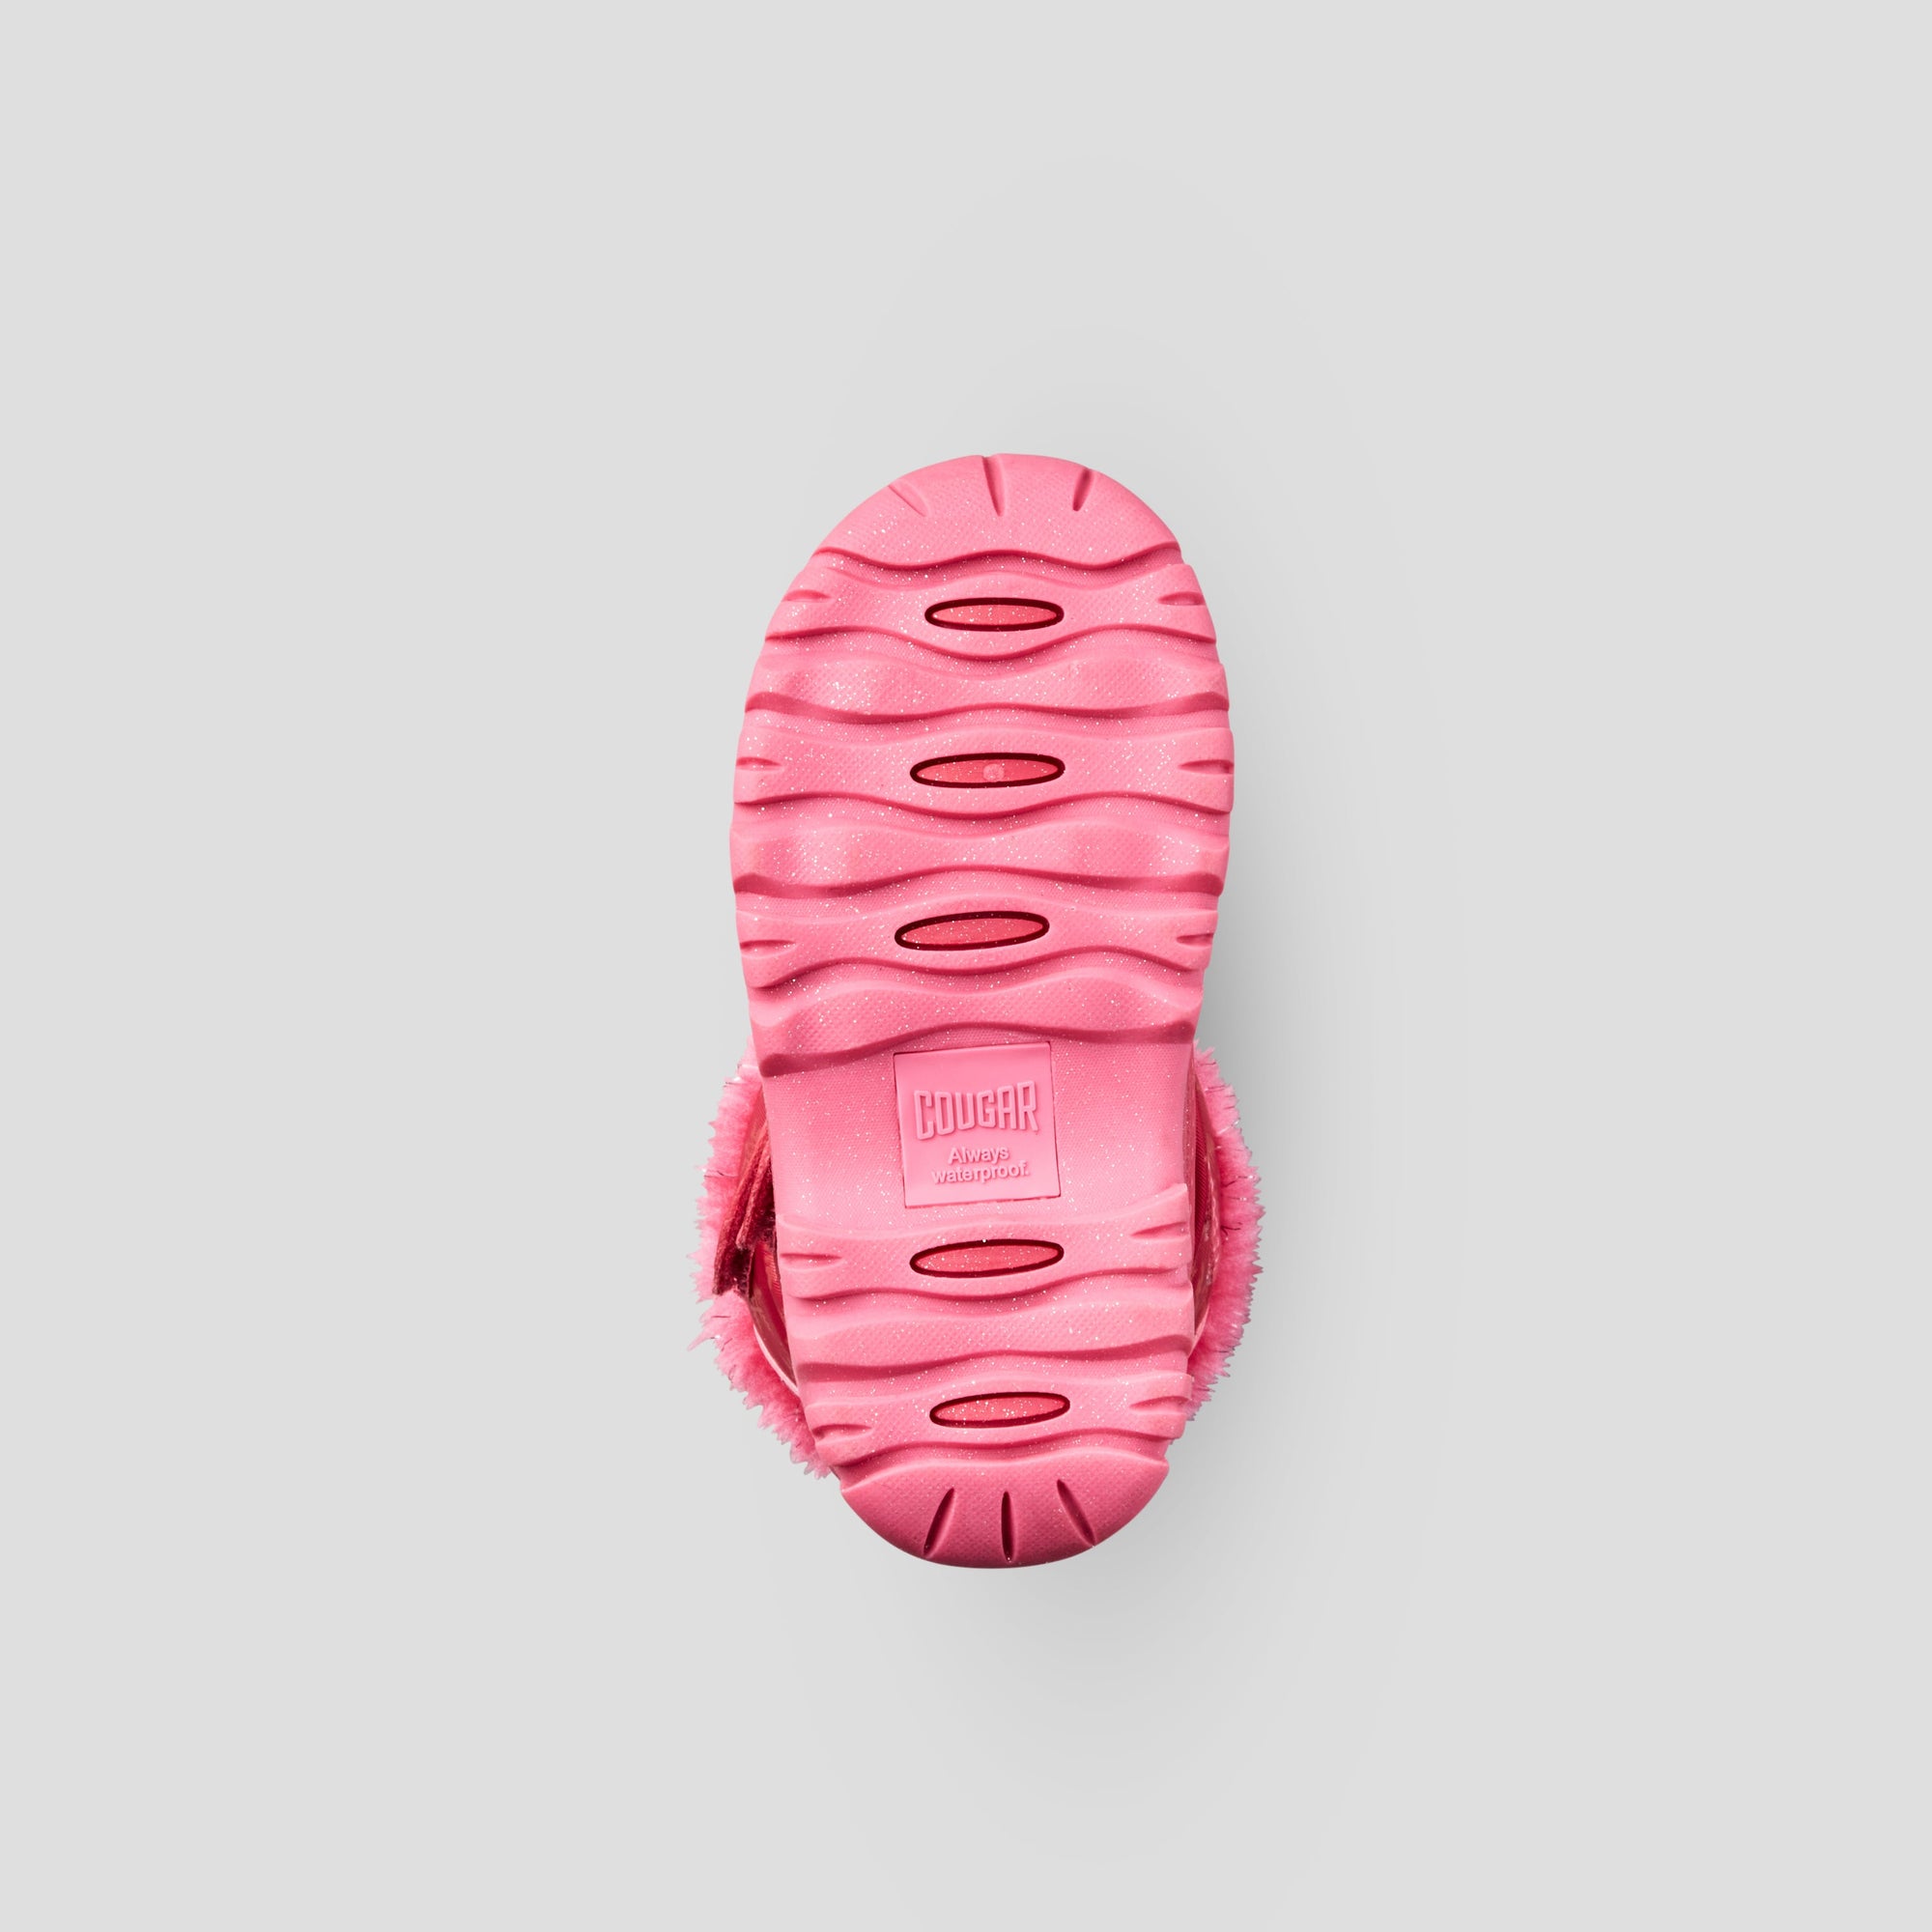 Boost - Botte d'hiver imperméable en nylon (Tout-petit et Juniors) - Colour Rose